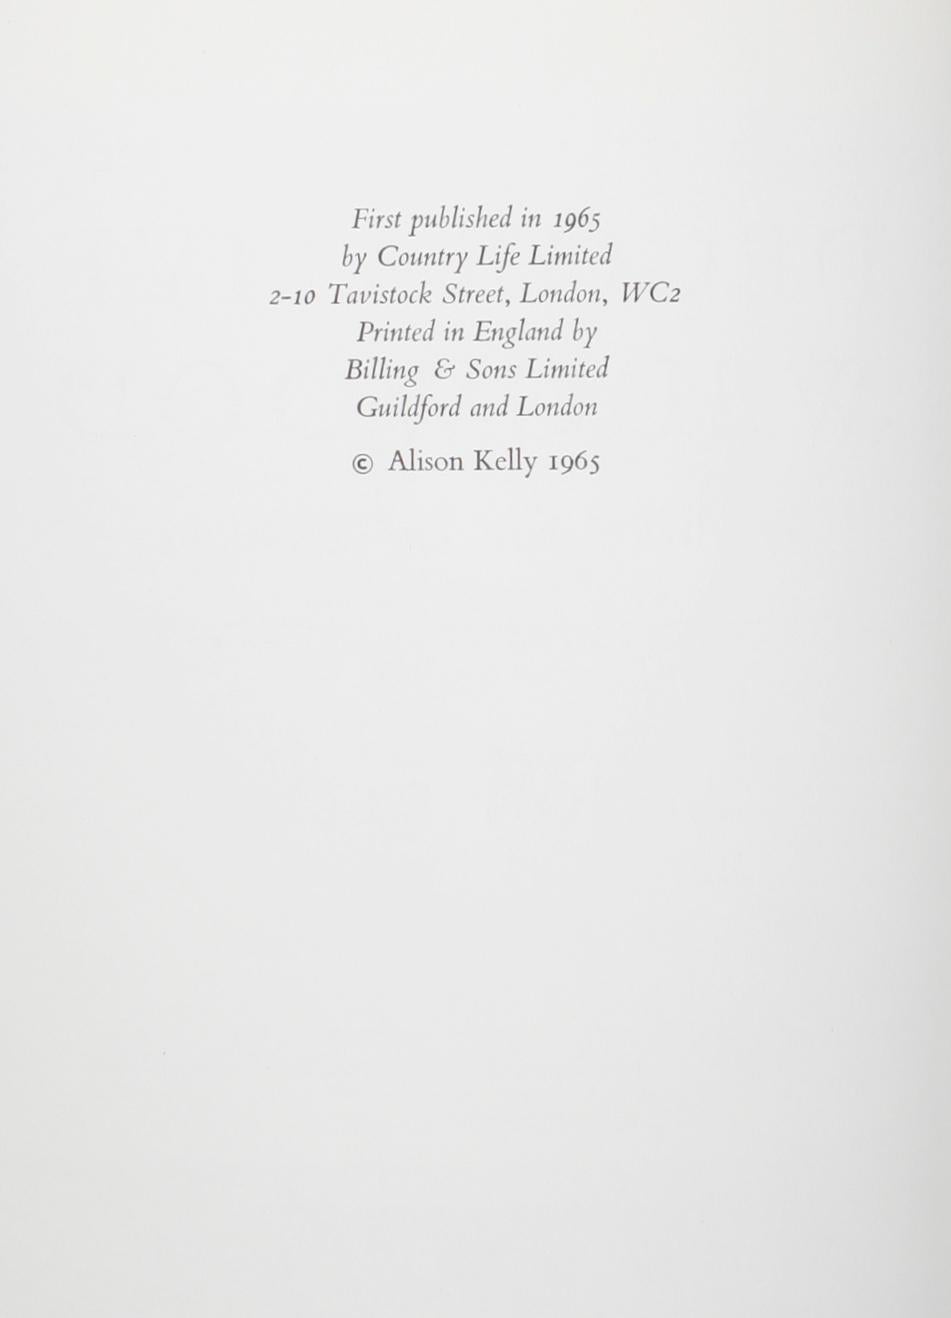 Dekoratives Wedgwood von Alison Kelly. Country Life Limited, 1965. 1. Ausgabe Hardcover mit Schutzumschlag. Das Buch umfasst: Josiah Wedgwood und der Geschmack seiner Zeit, Ideen für die Innendekoration, Entwürfe für Kaminaufsätze,